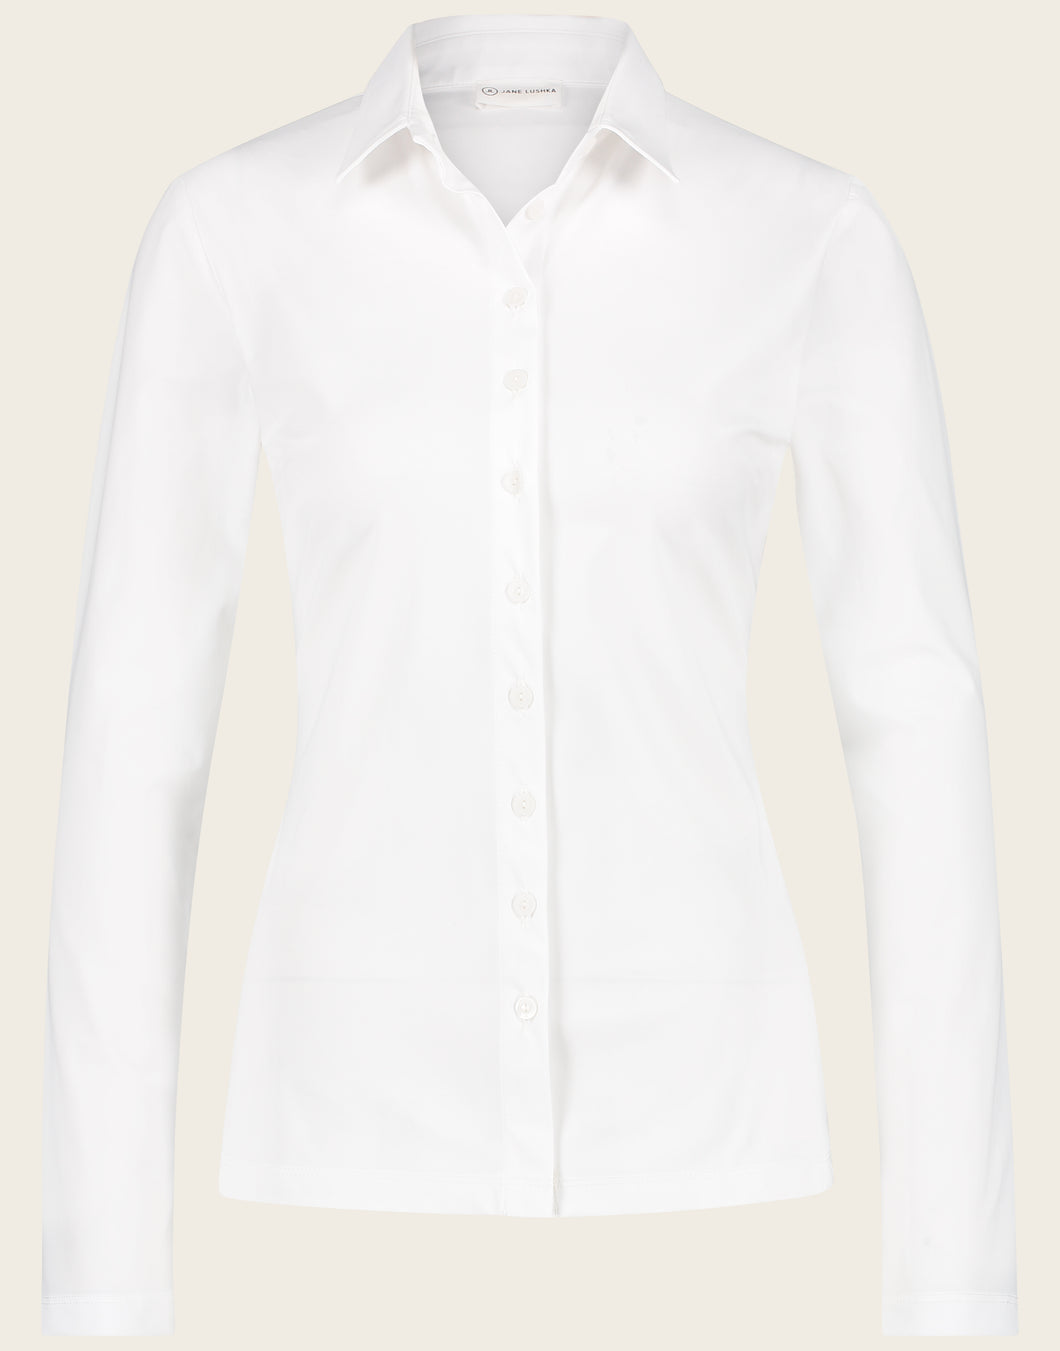 Jane Lushka Kikkie, witte blouse Kikkie is een getailleerde blouse uit de basis collectie van Jane Luskha, heeft 3/4 lange mouwen, witte knoopjes en een kraag. Deze stijlvolle blouse is ook ontzettend mooi om te dragen onder een pak. De blouse is uitgevoerd in het wit en is van de bekende travel kwaliteit.